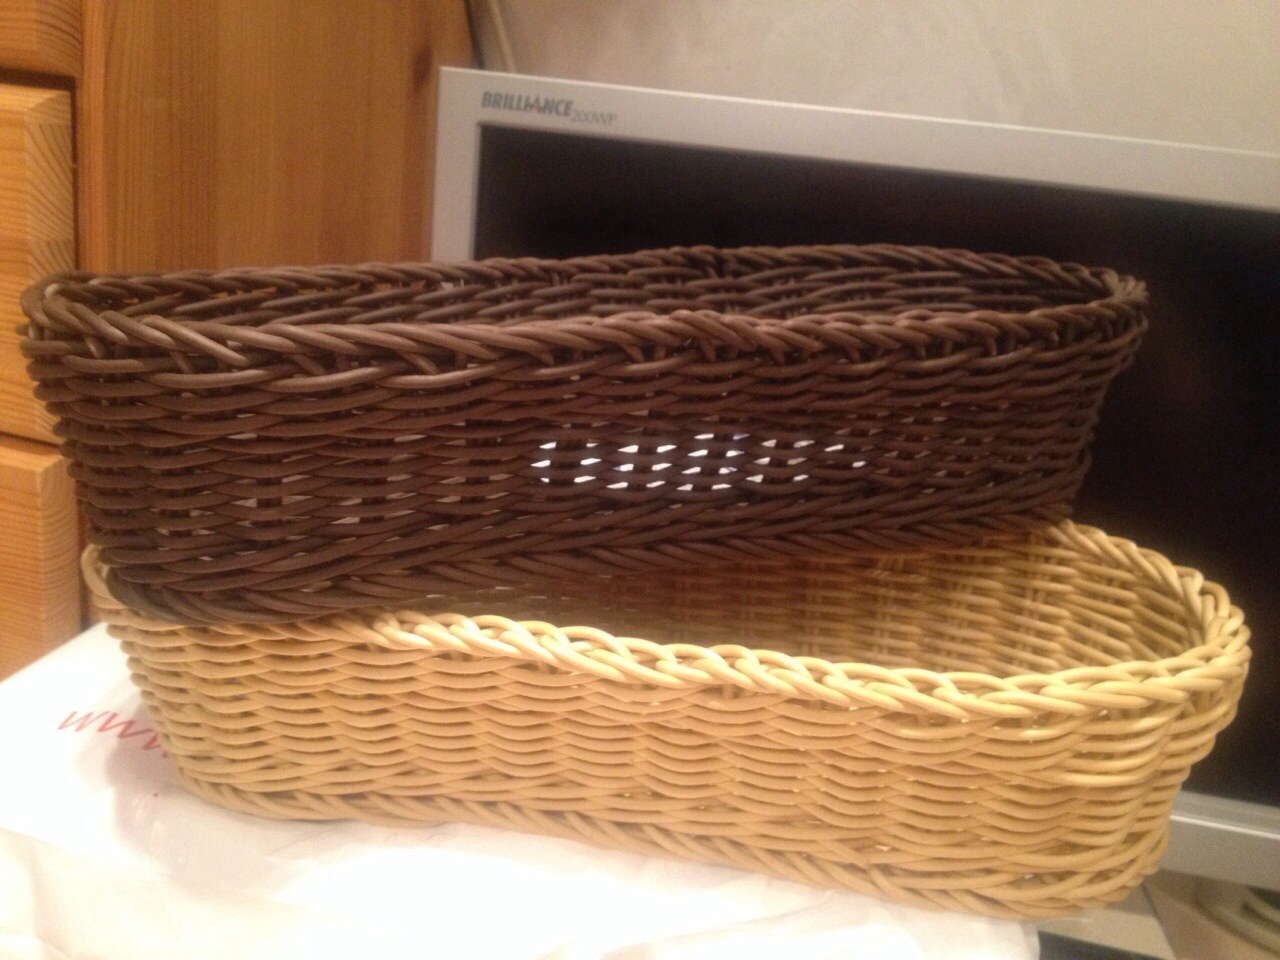 Proofing basket